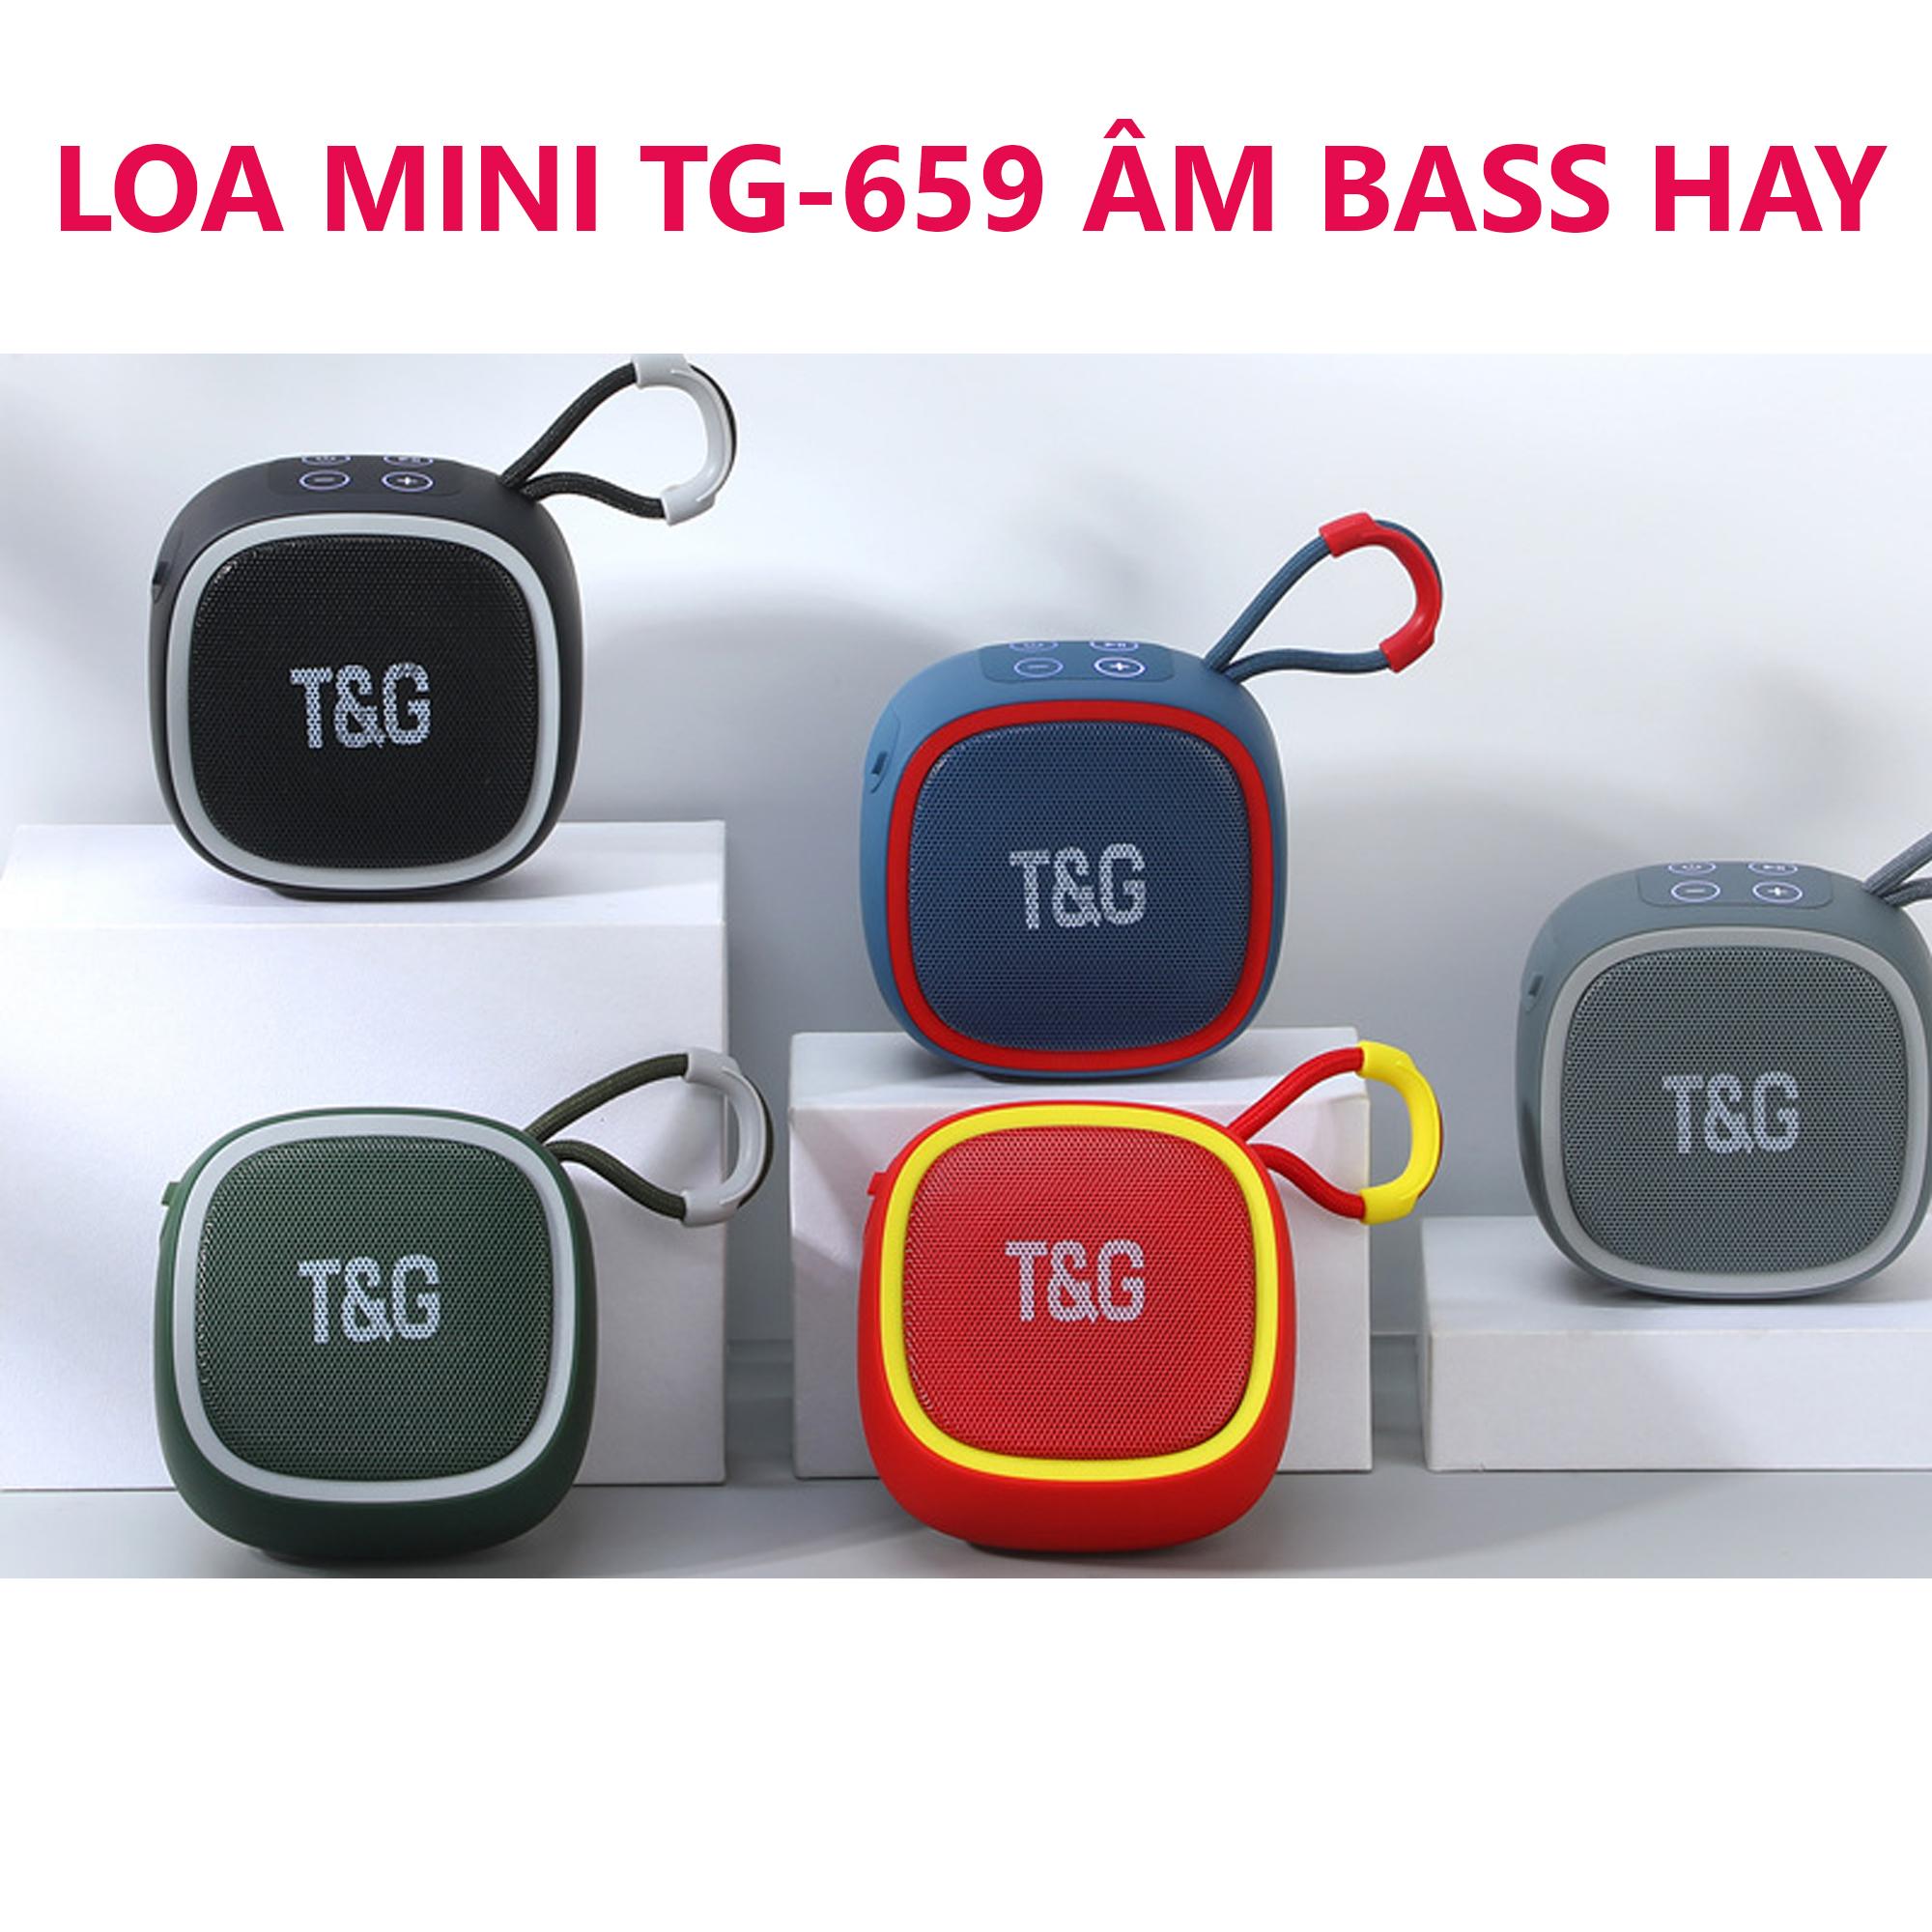 Loa bluetooth mini TG-659